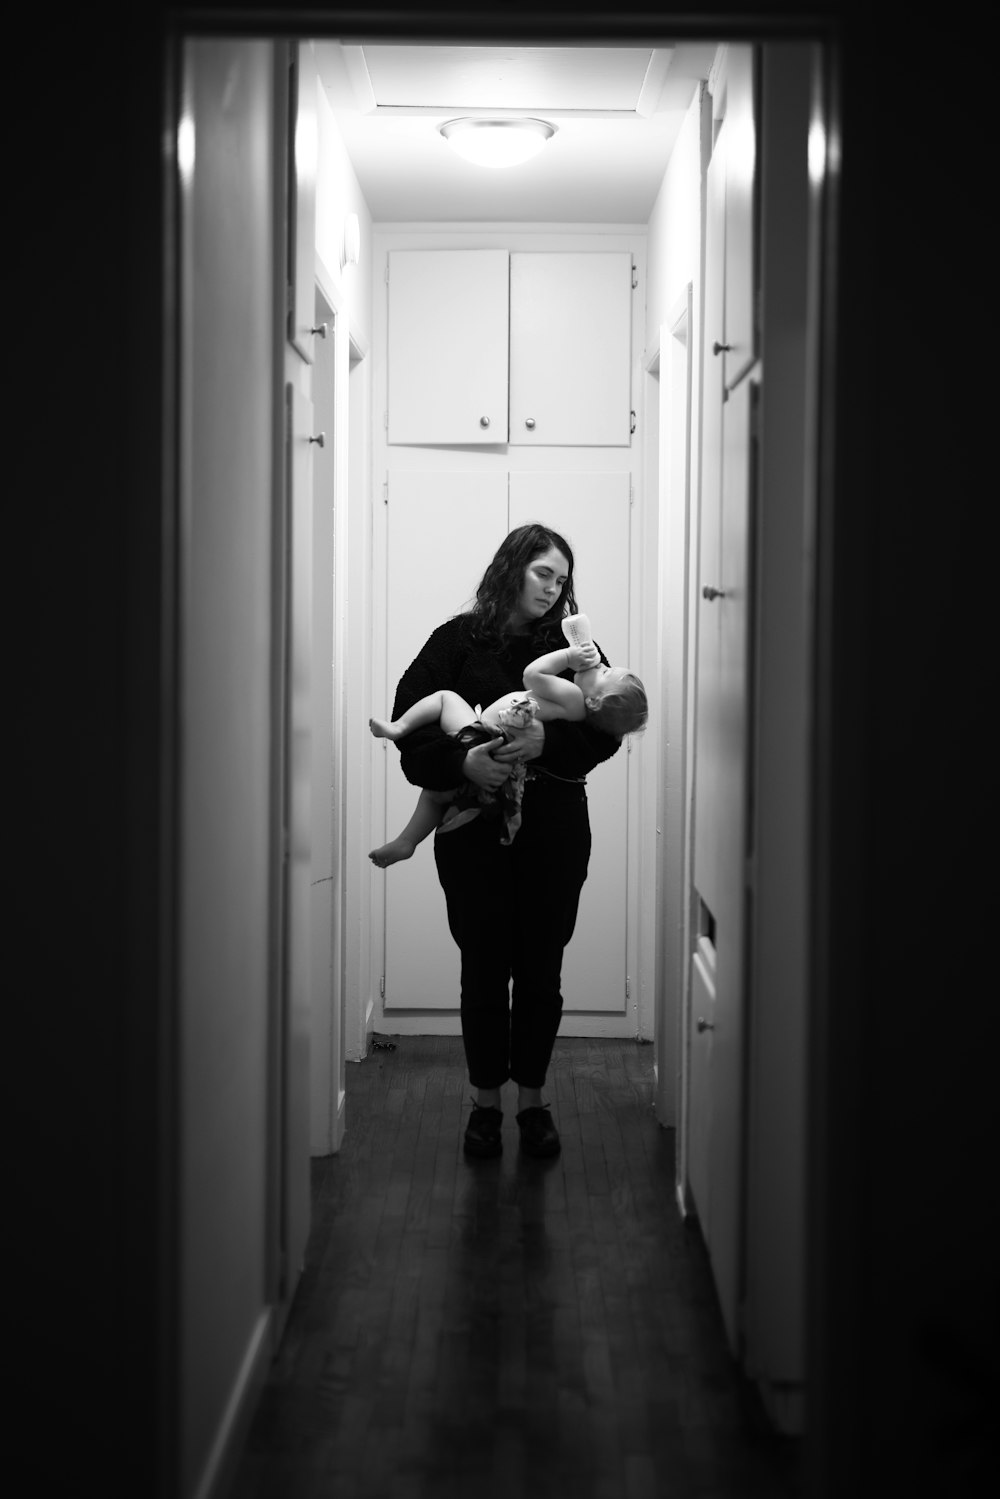 검은 긴 소매 셔츠를 입은 여자가 회색조 사진에서 아기를 안고 있다